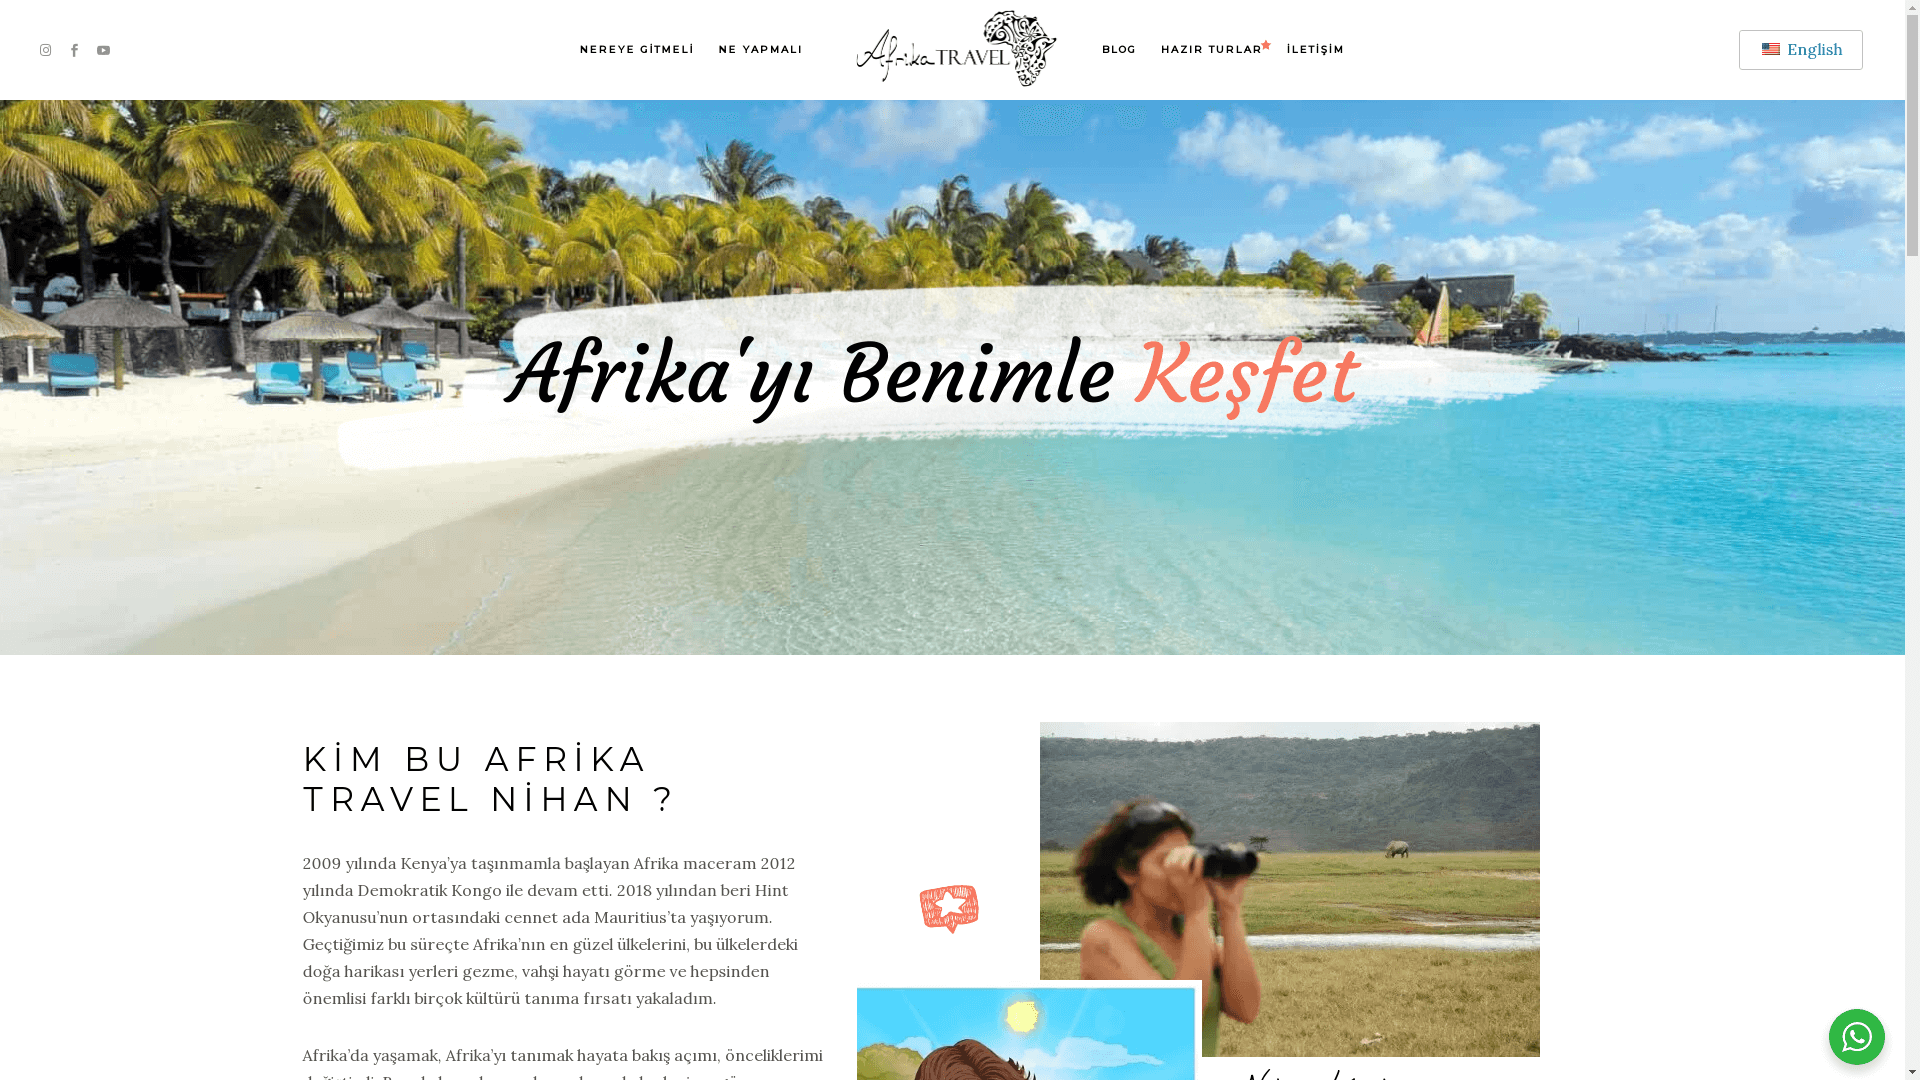  Afrika Travel